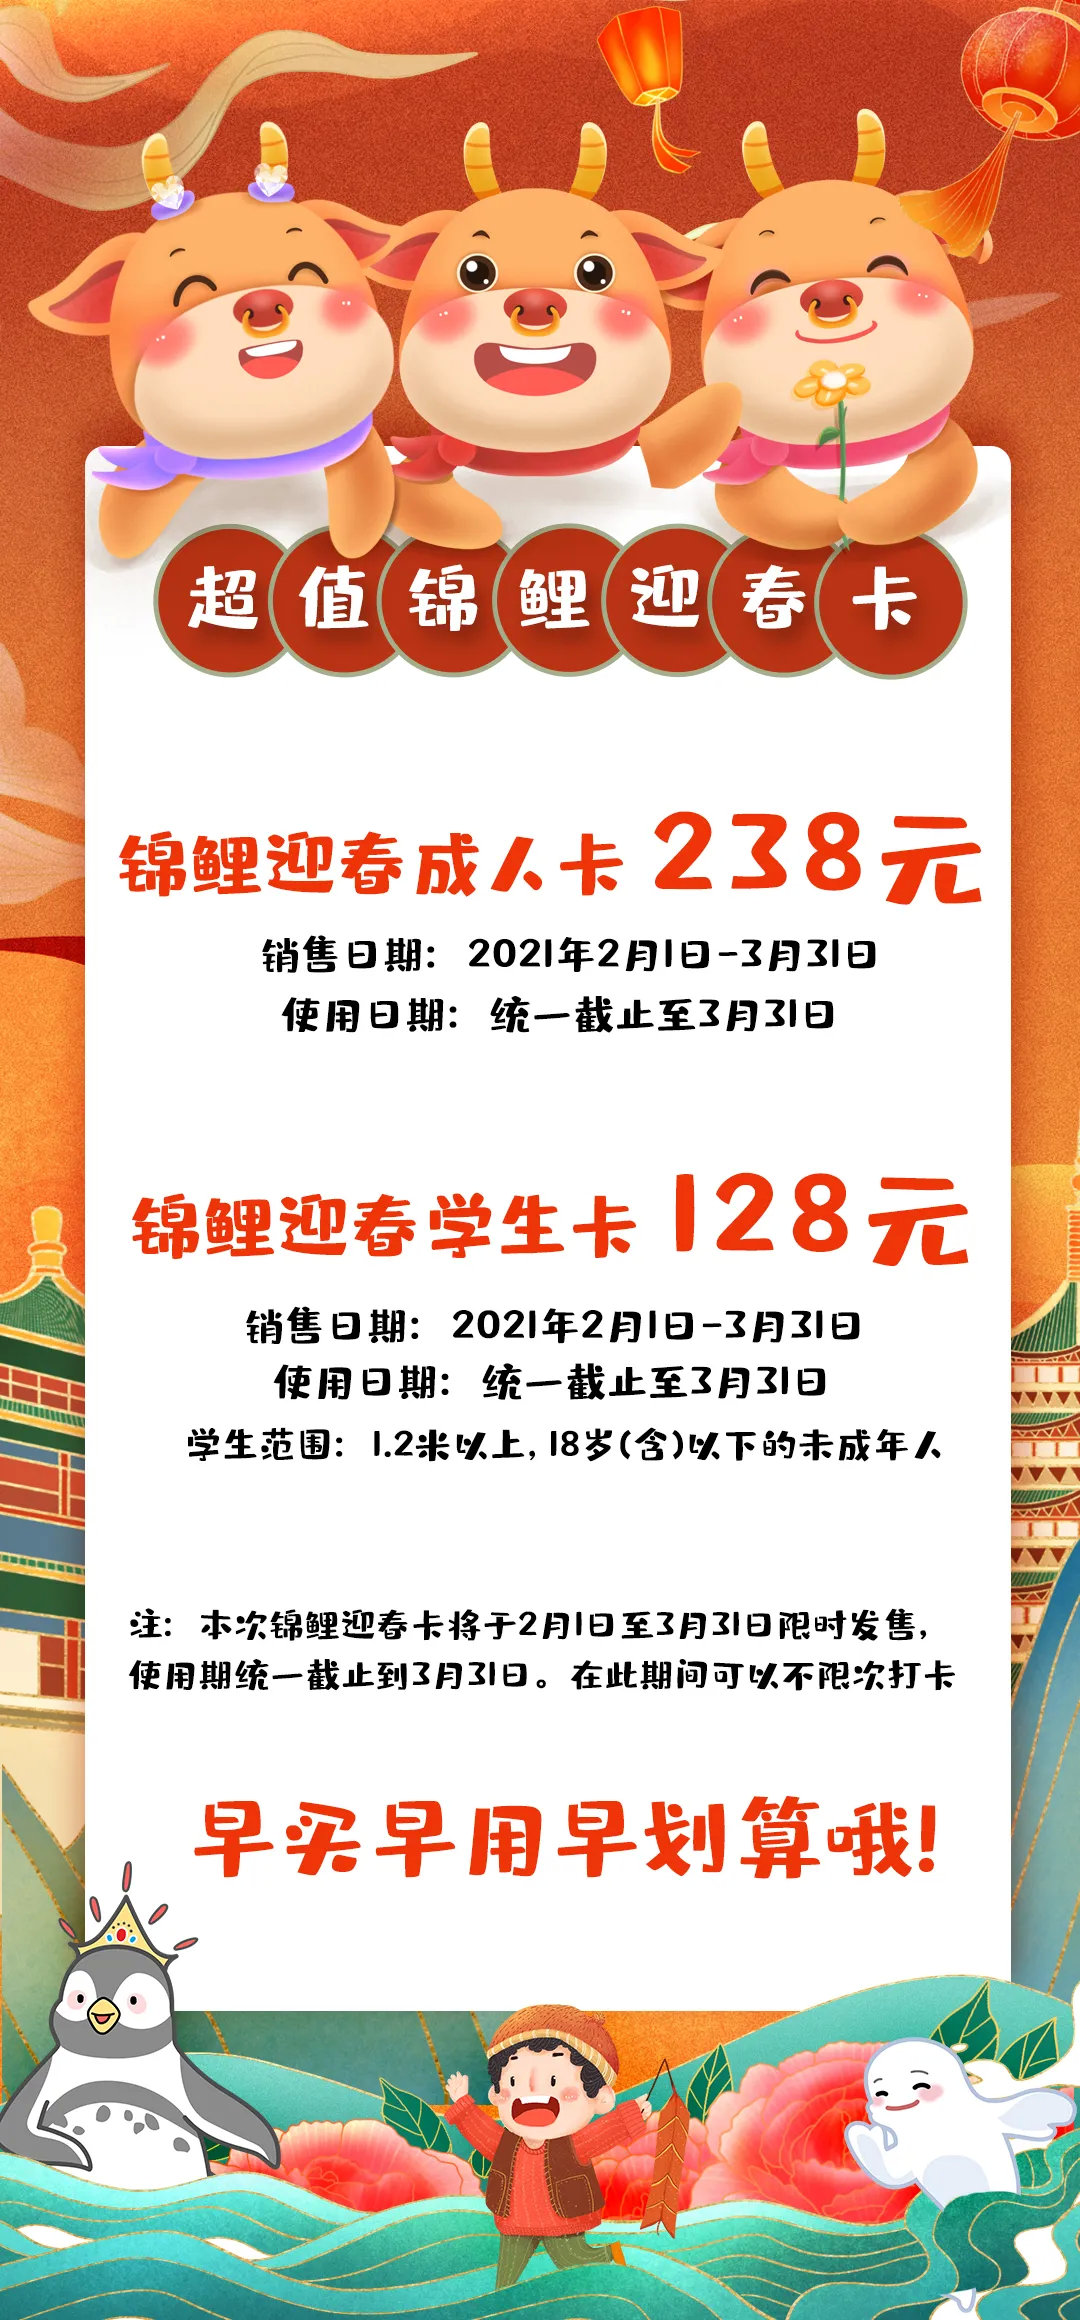 北京海洋馆最新优惠活动/门票价格/在线预定